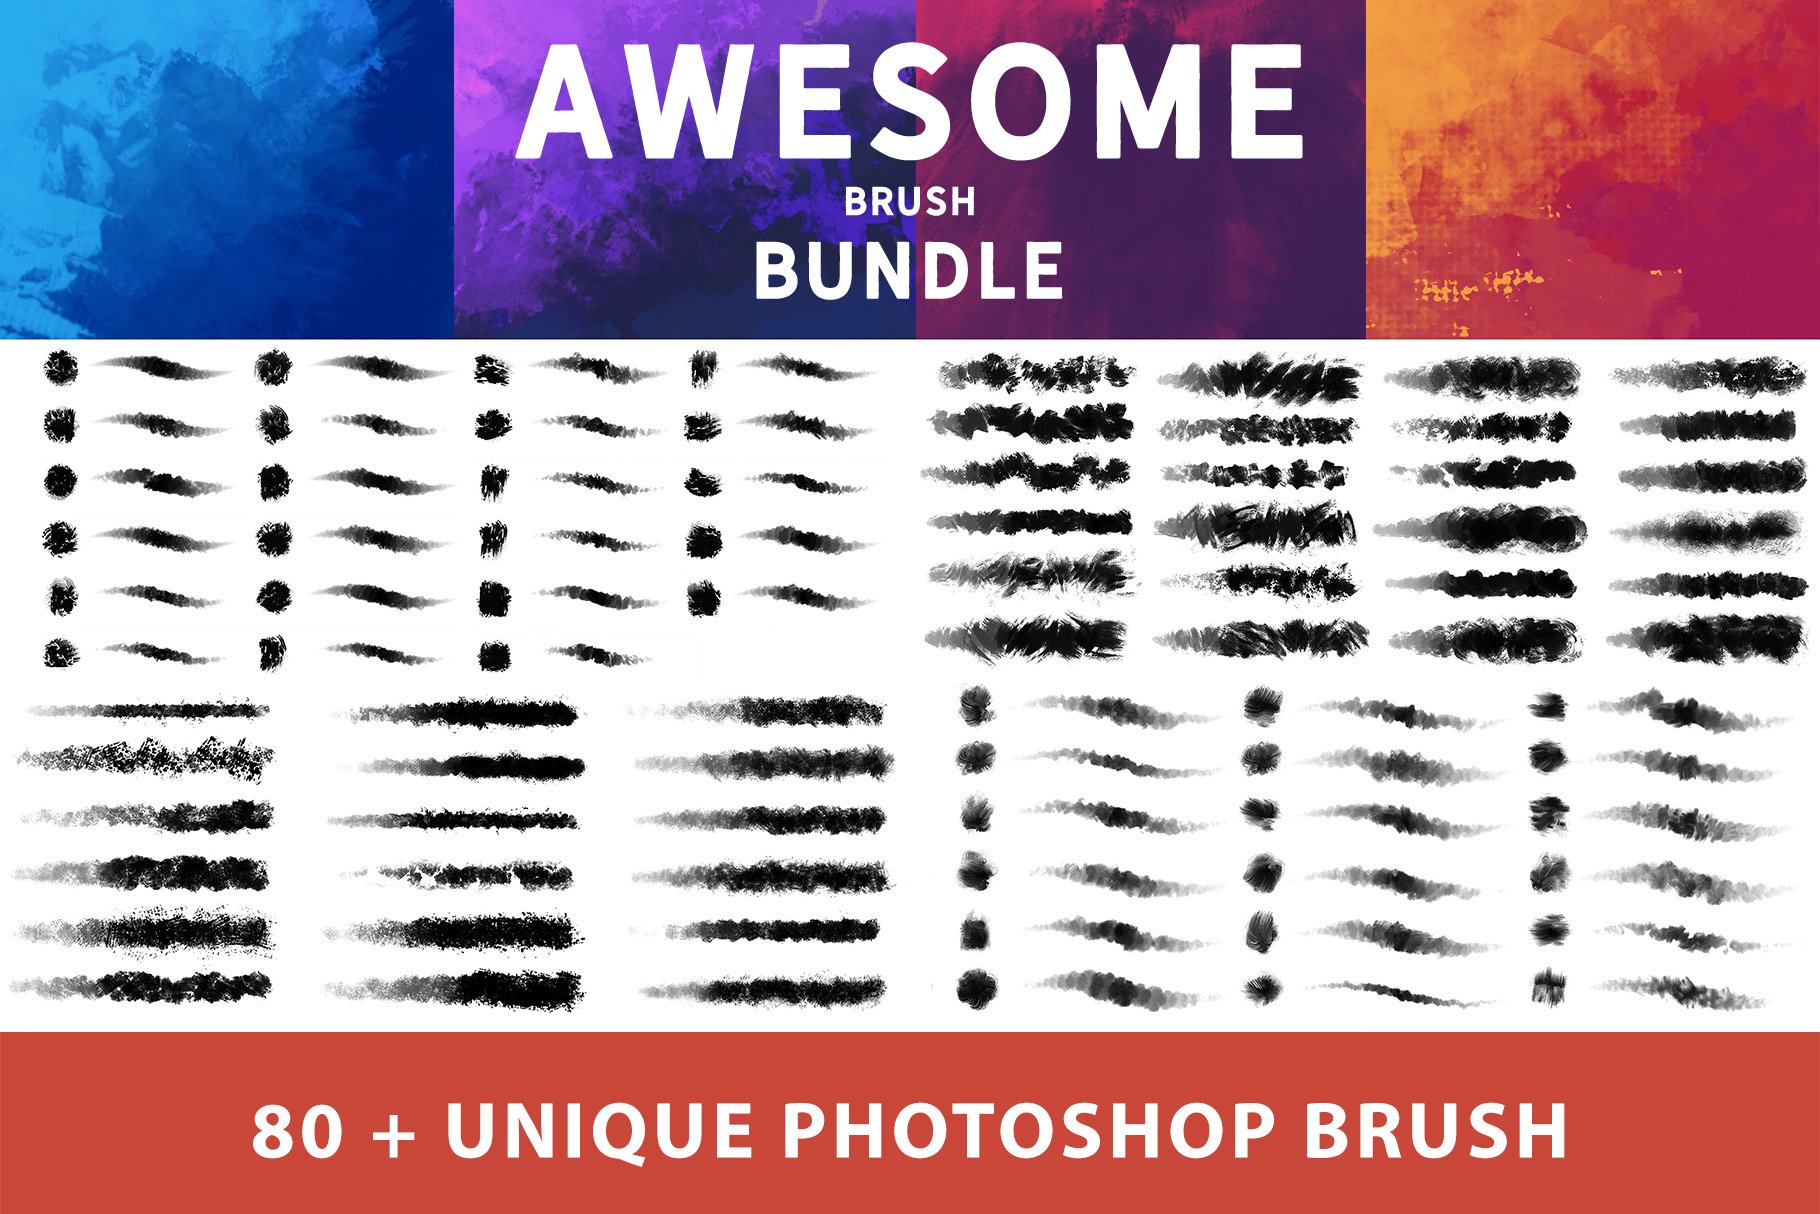 Awesome Brush Bundlecover image.